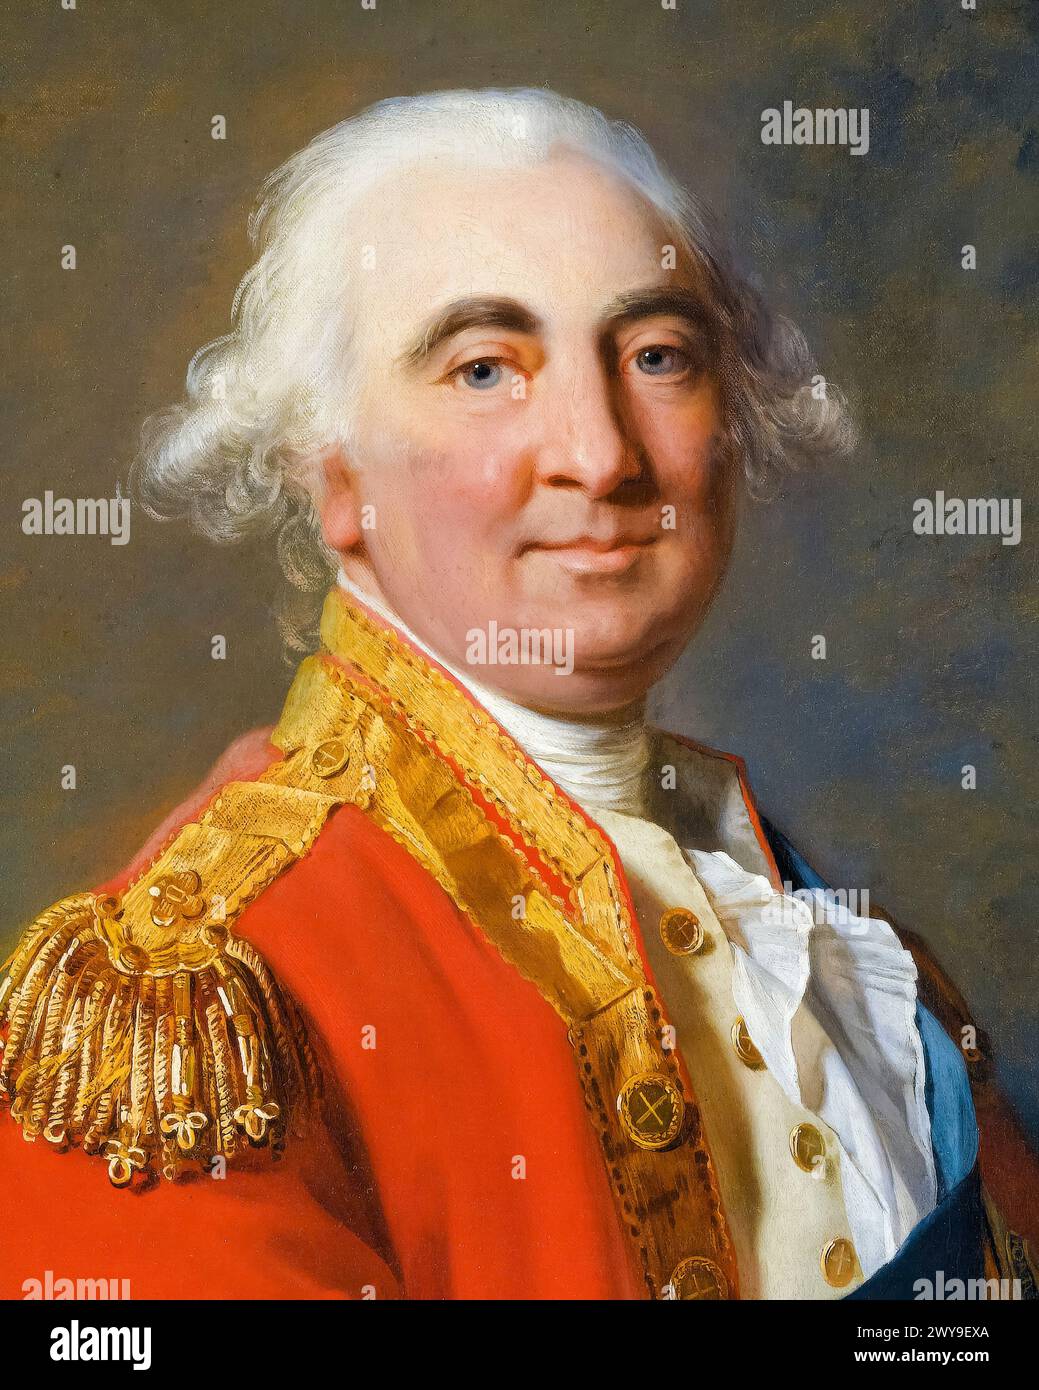 William Petty, 2e comte de Shelburne (1737-1805), homme politique whig anglo-irlandais et premier ministre de Grande-Bretagne 1782-1783, portrait peint à l'huile sur toile par Jean-Laurent Mosnier, 1791 Banque D'Images